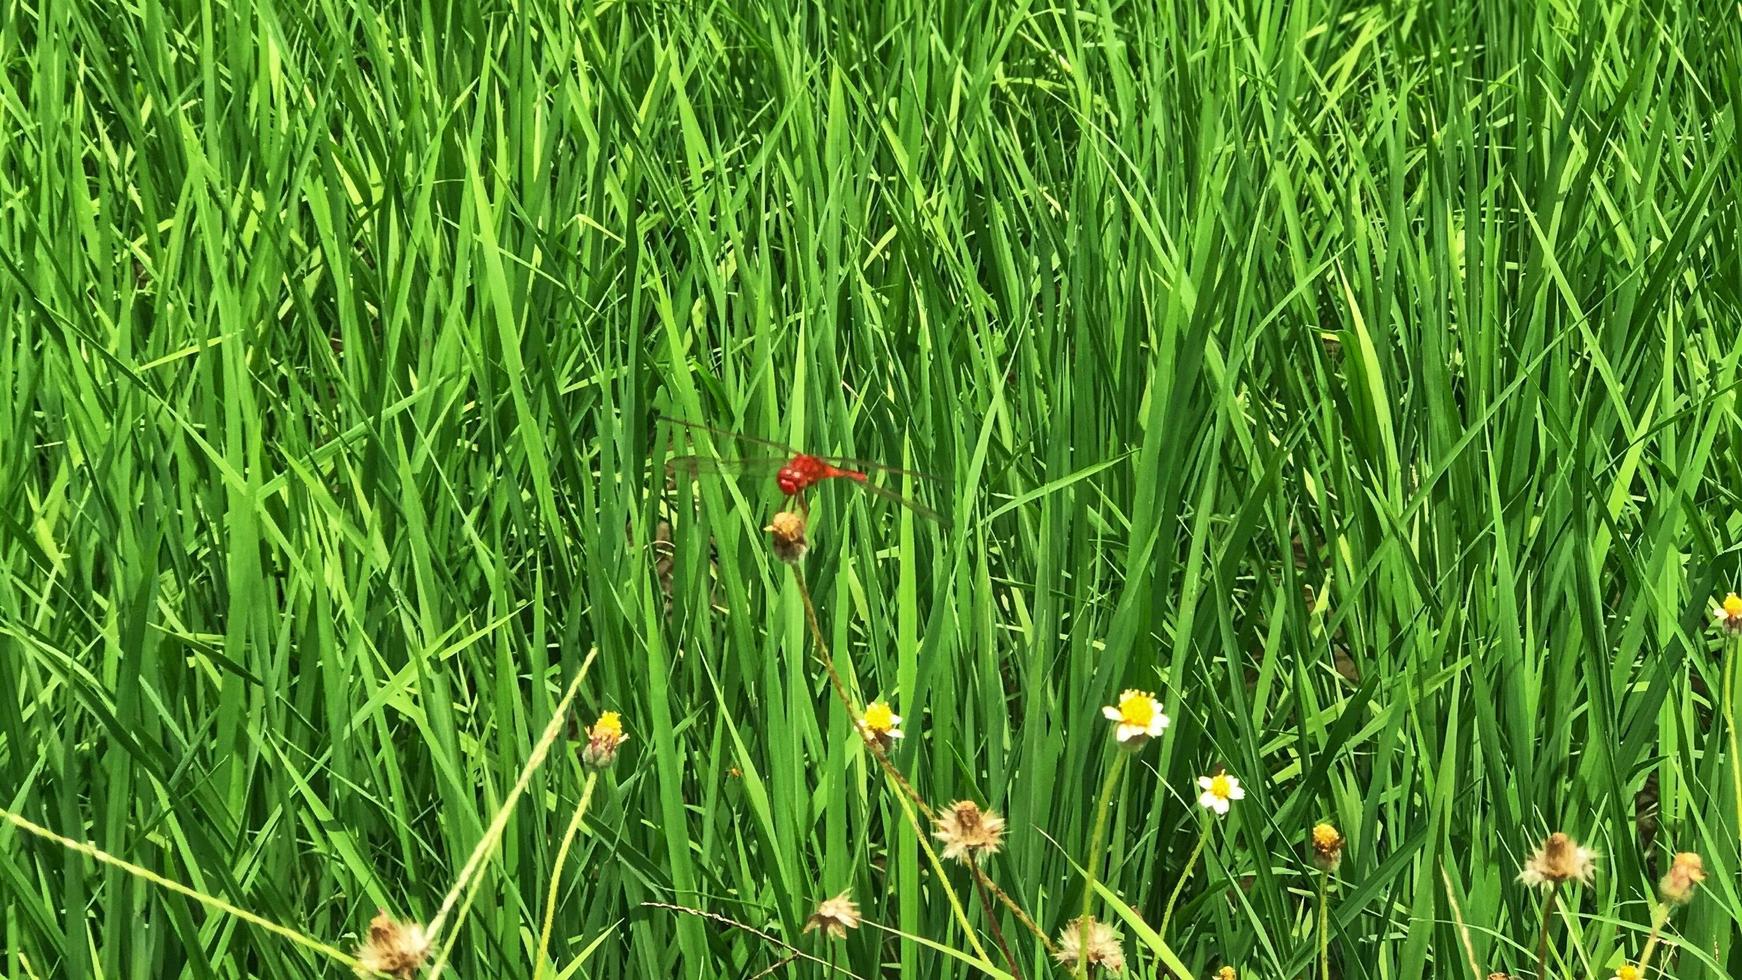 Rote Libelle im Feld foto